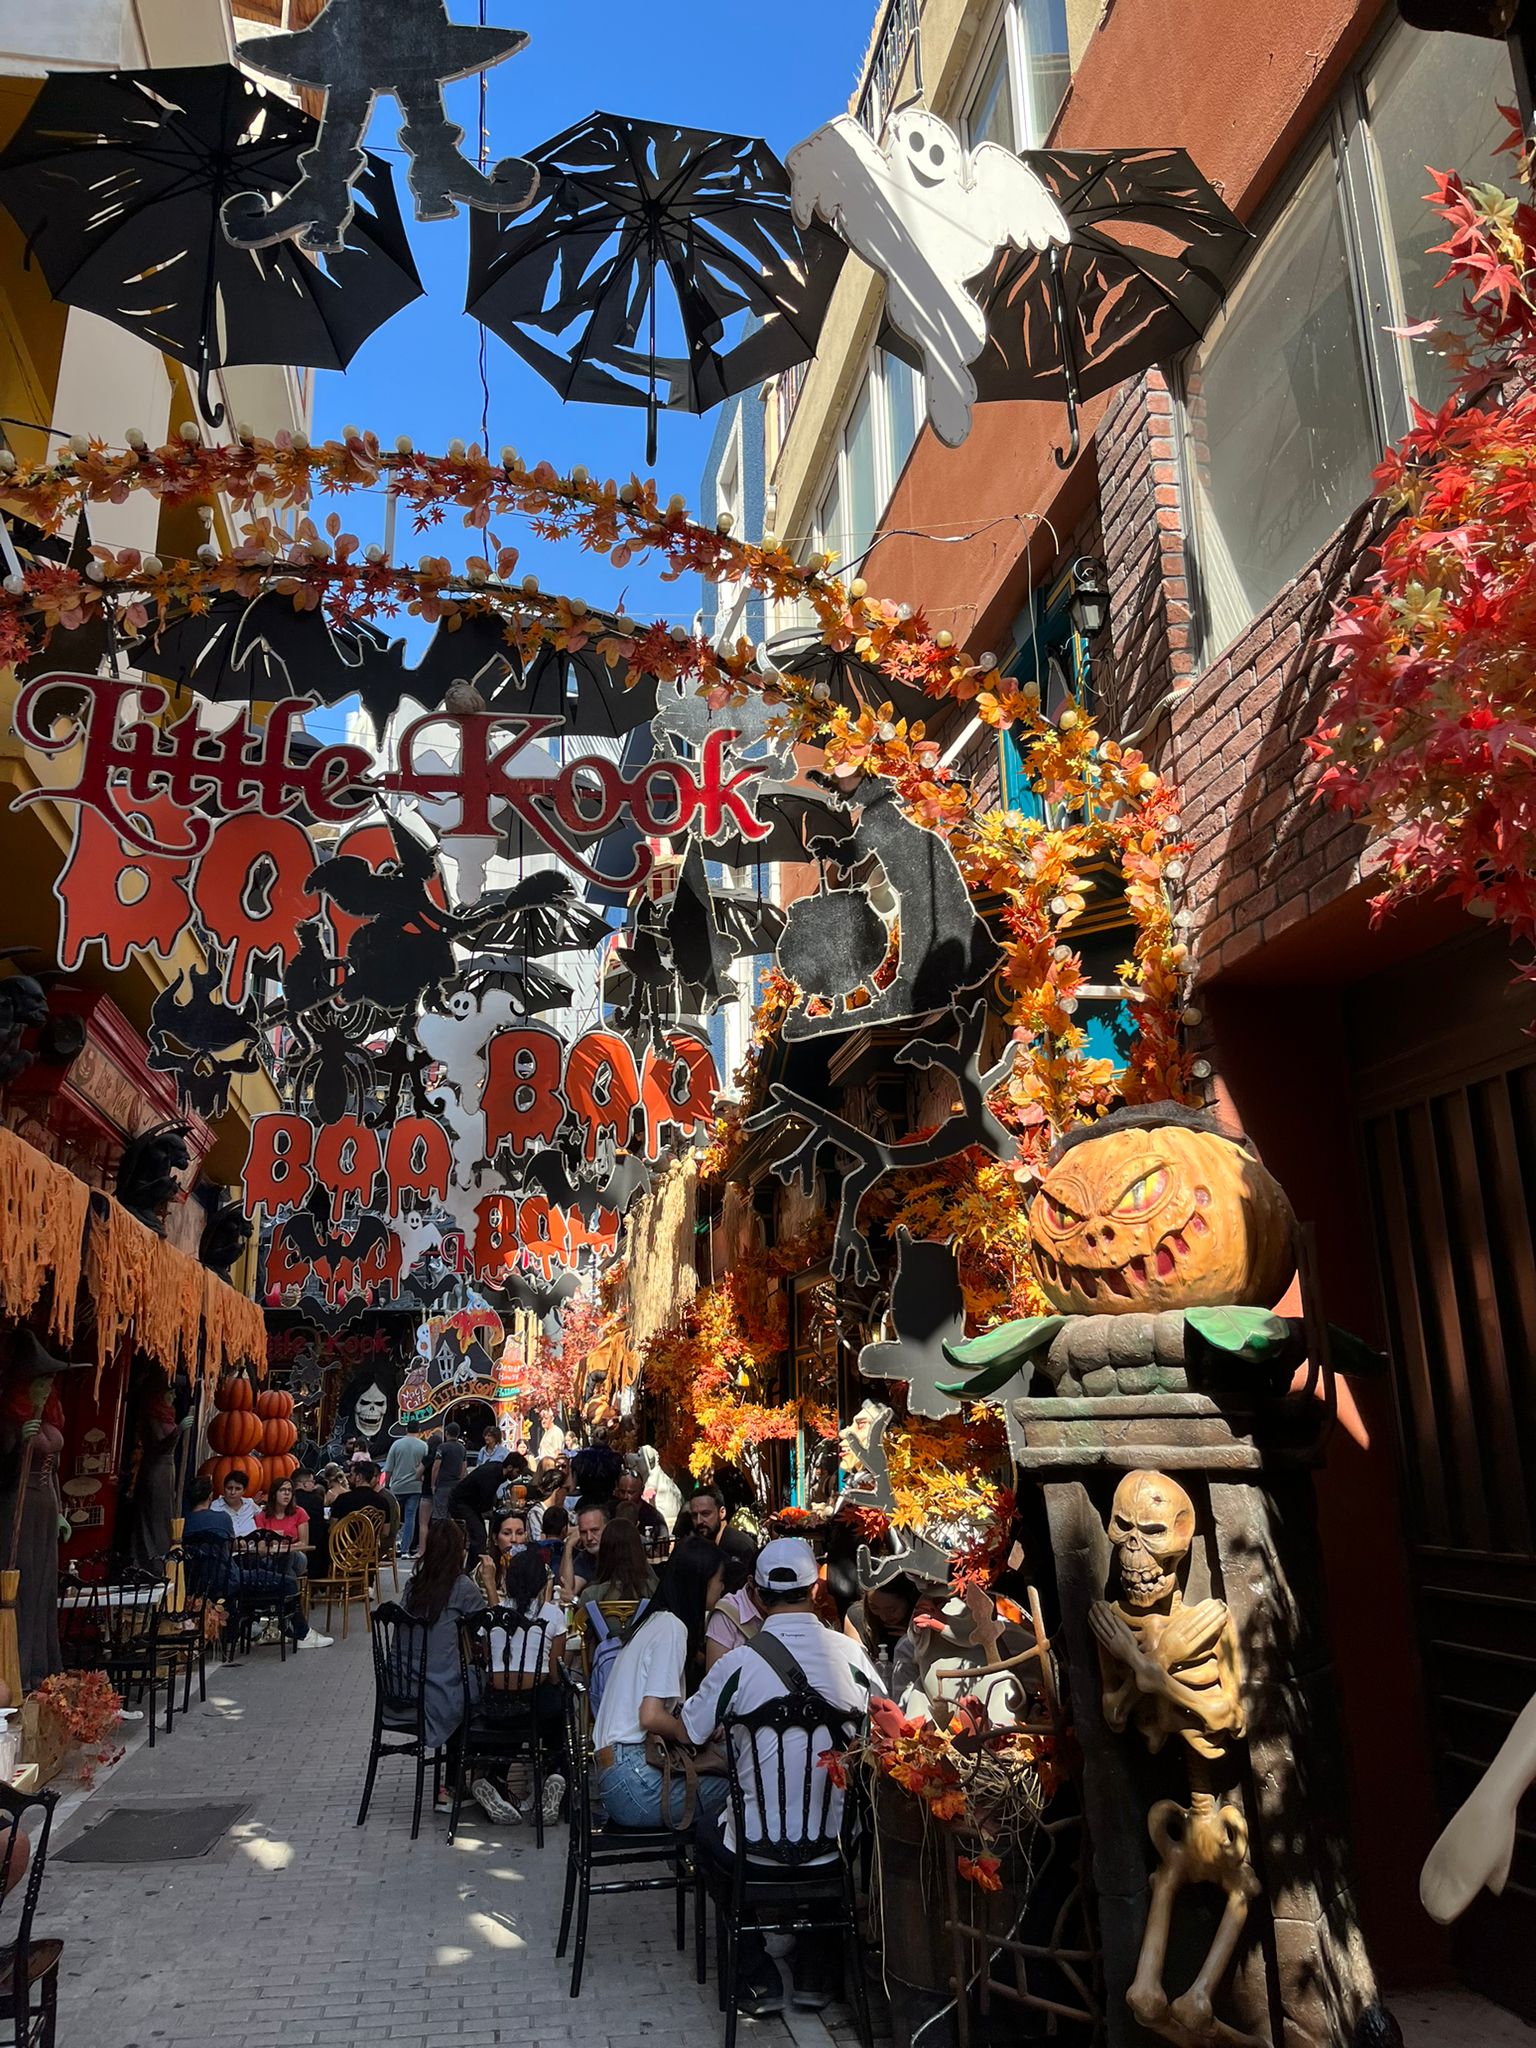 Ulica dekorovaná do Halloween tématiky. Sú tam tekvice, zombie, duchovia a turisti na stoličkách.